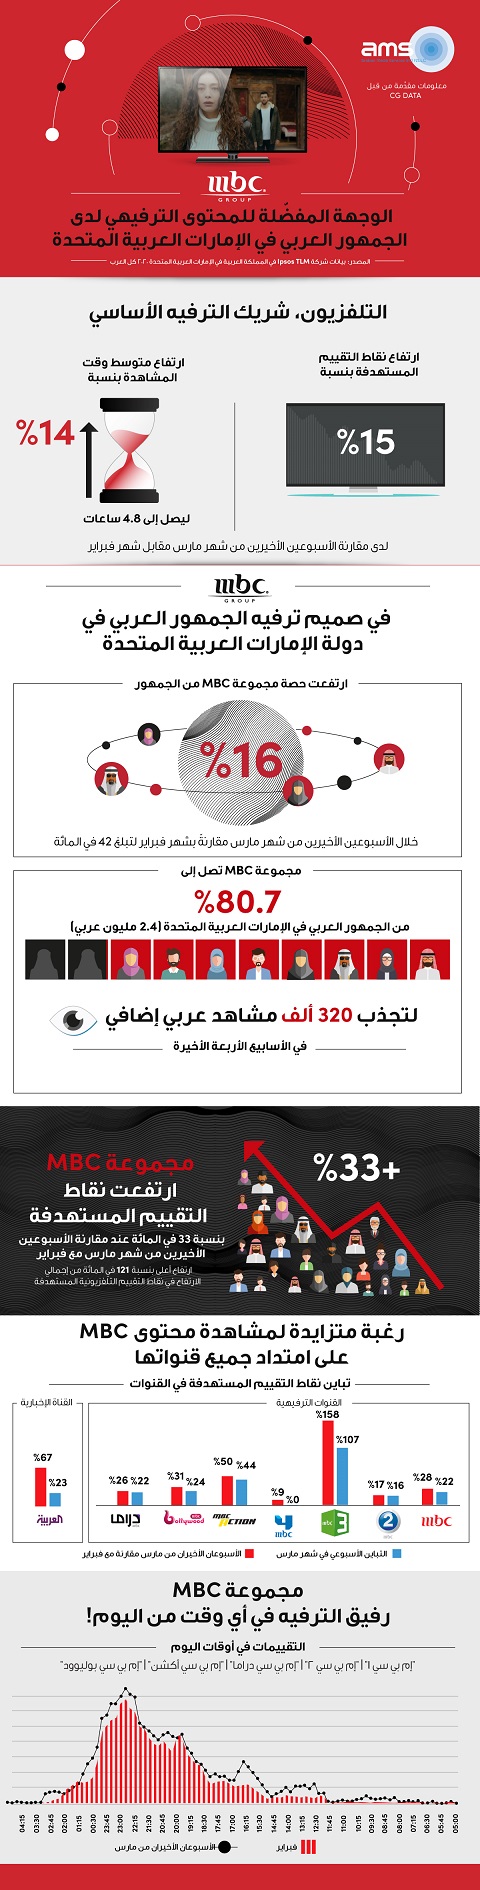 مجموعة MBC – الوجهة المفضّلة للمحتوى الترفيهي لدى الجمهور العربي في الإمارات العربية المتحدة 